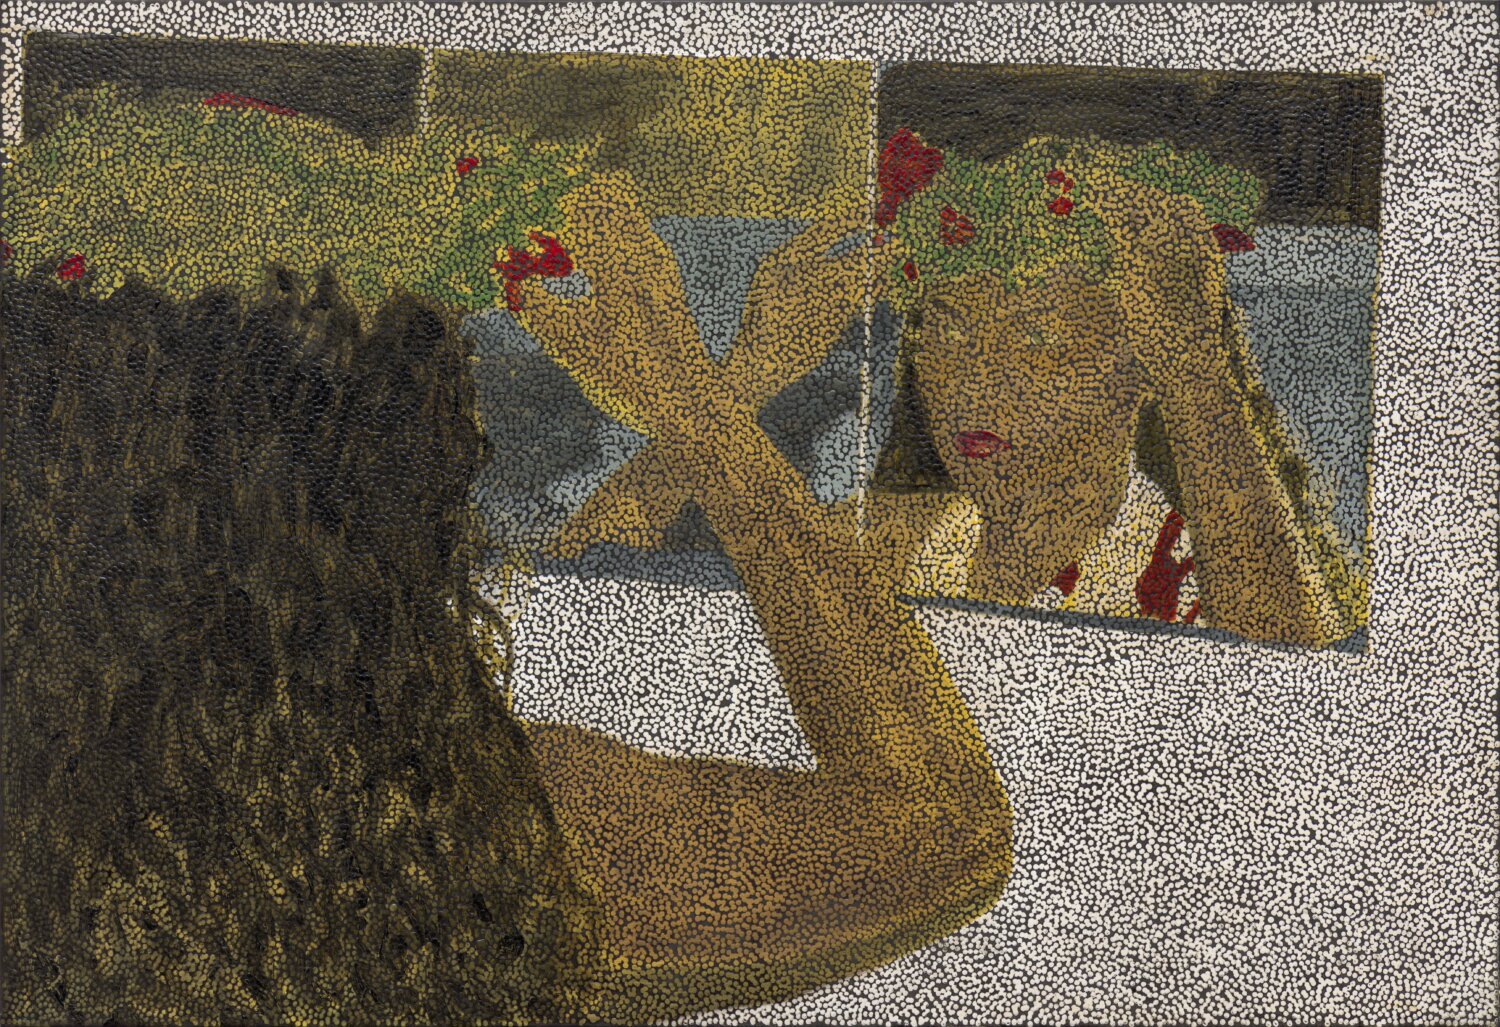 Gemälde des australischen Künstlers Daniel Boyd, dass eine Frau vor eine Spiegel zeigt, die sich einen Blumenkranz auf den Kopf setzt.